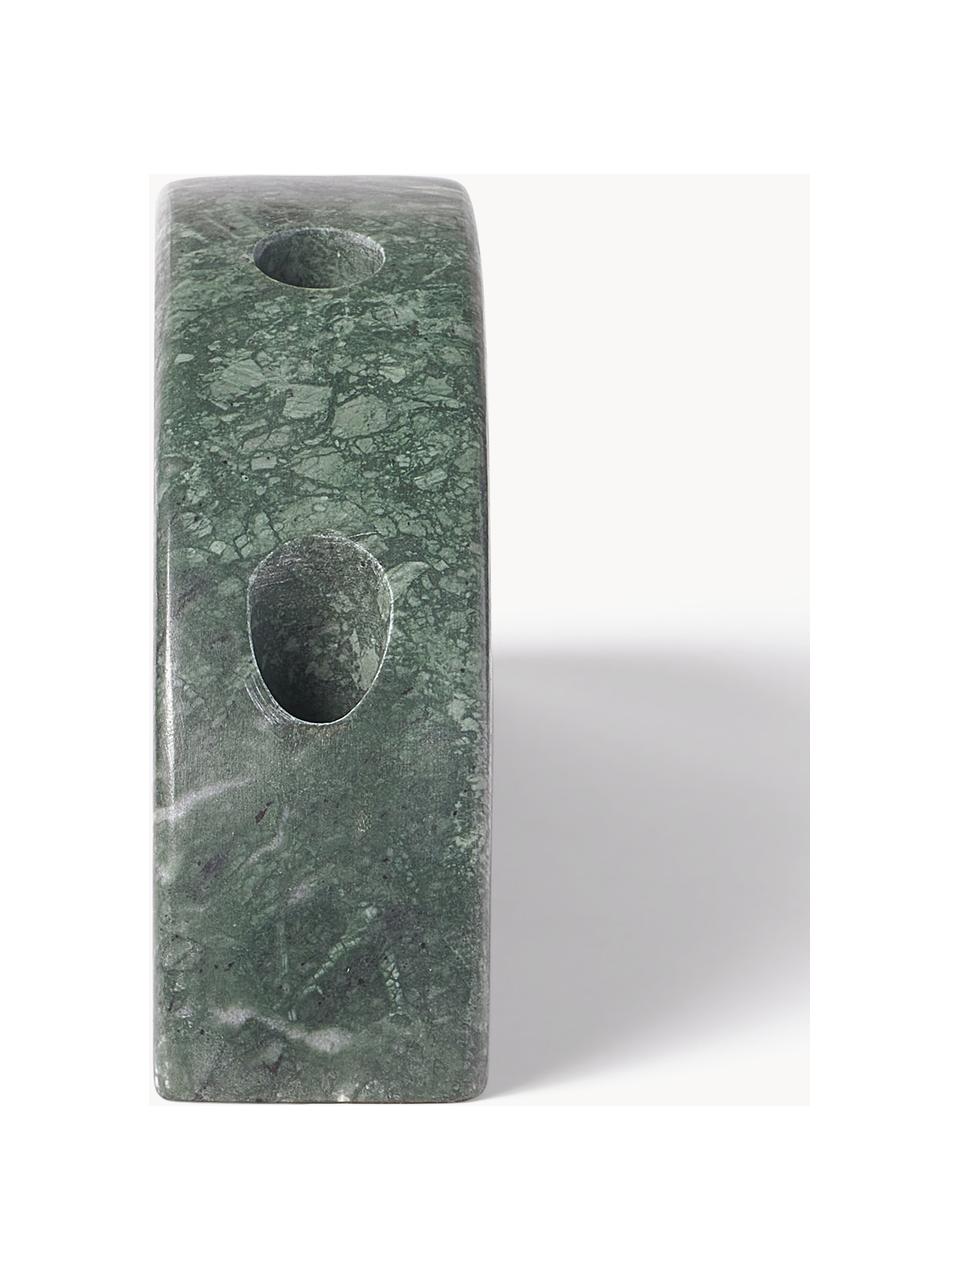 Marmor-Kerzenhalter Como, Marmor, Grün, marmoriert, B 28 x H 12 cm